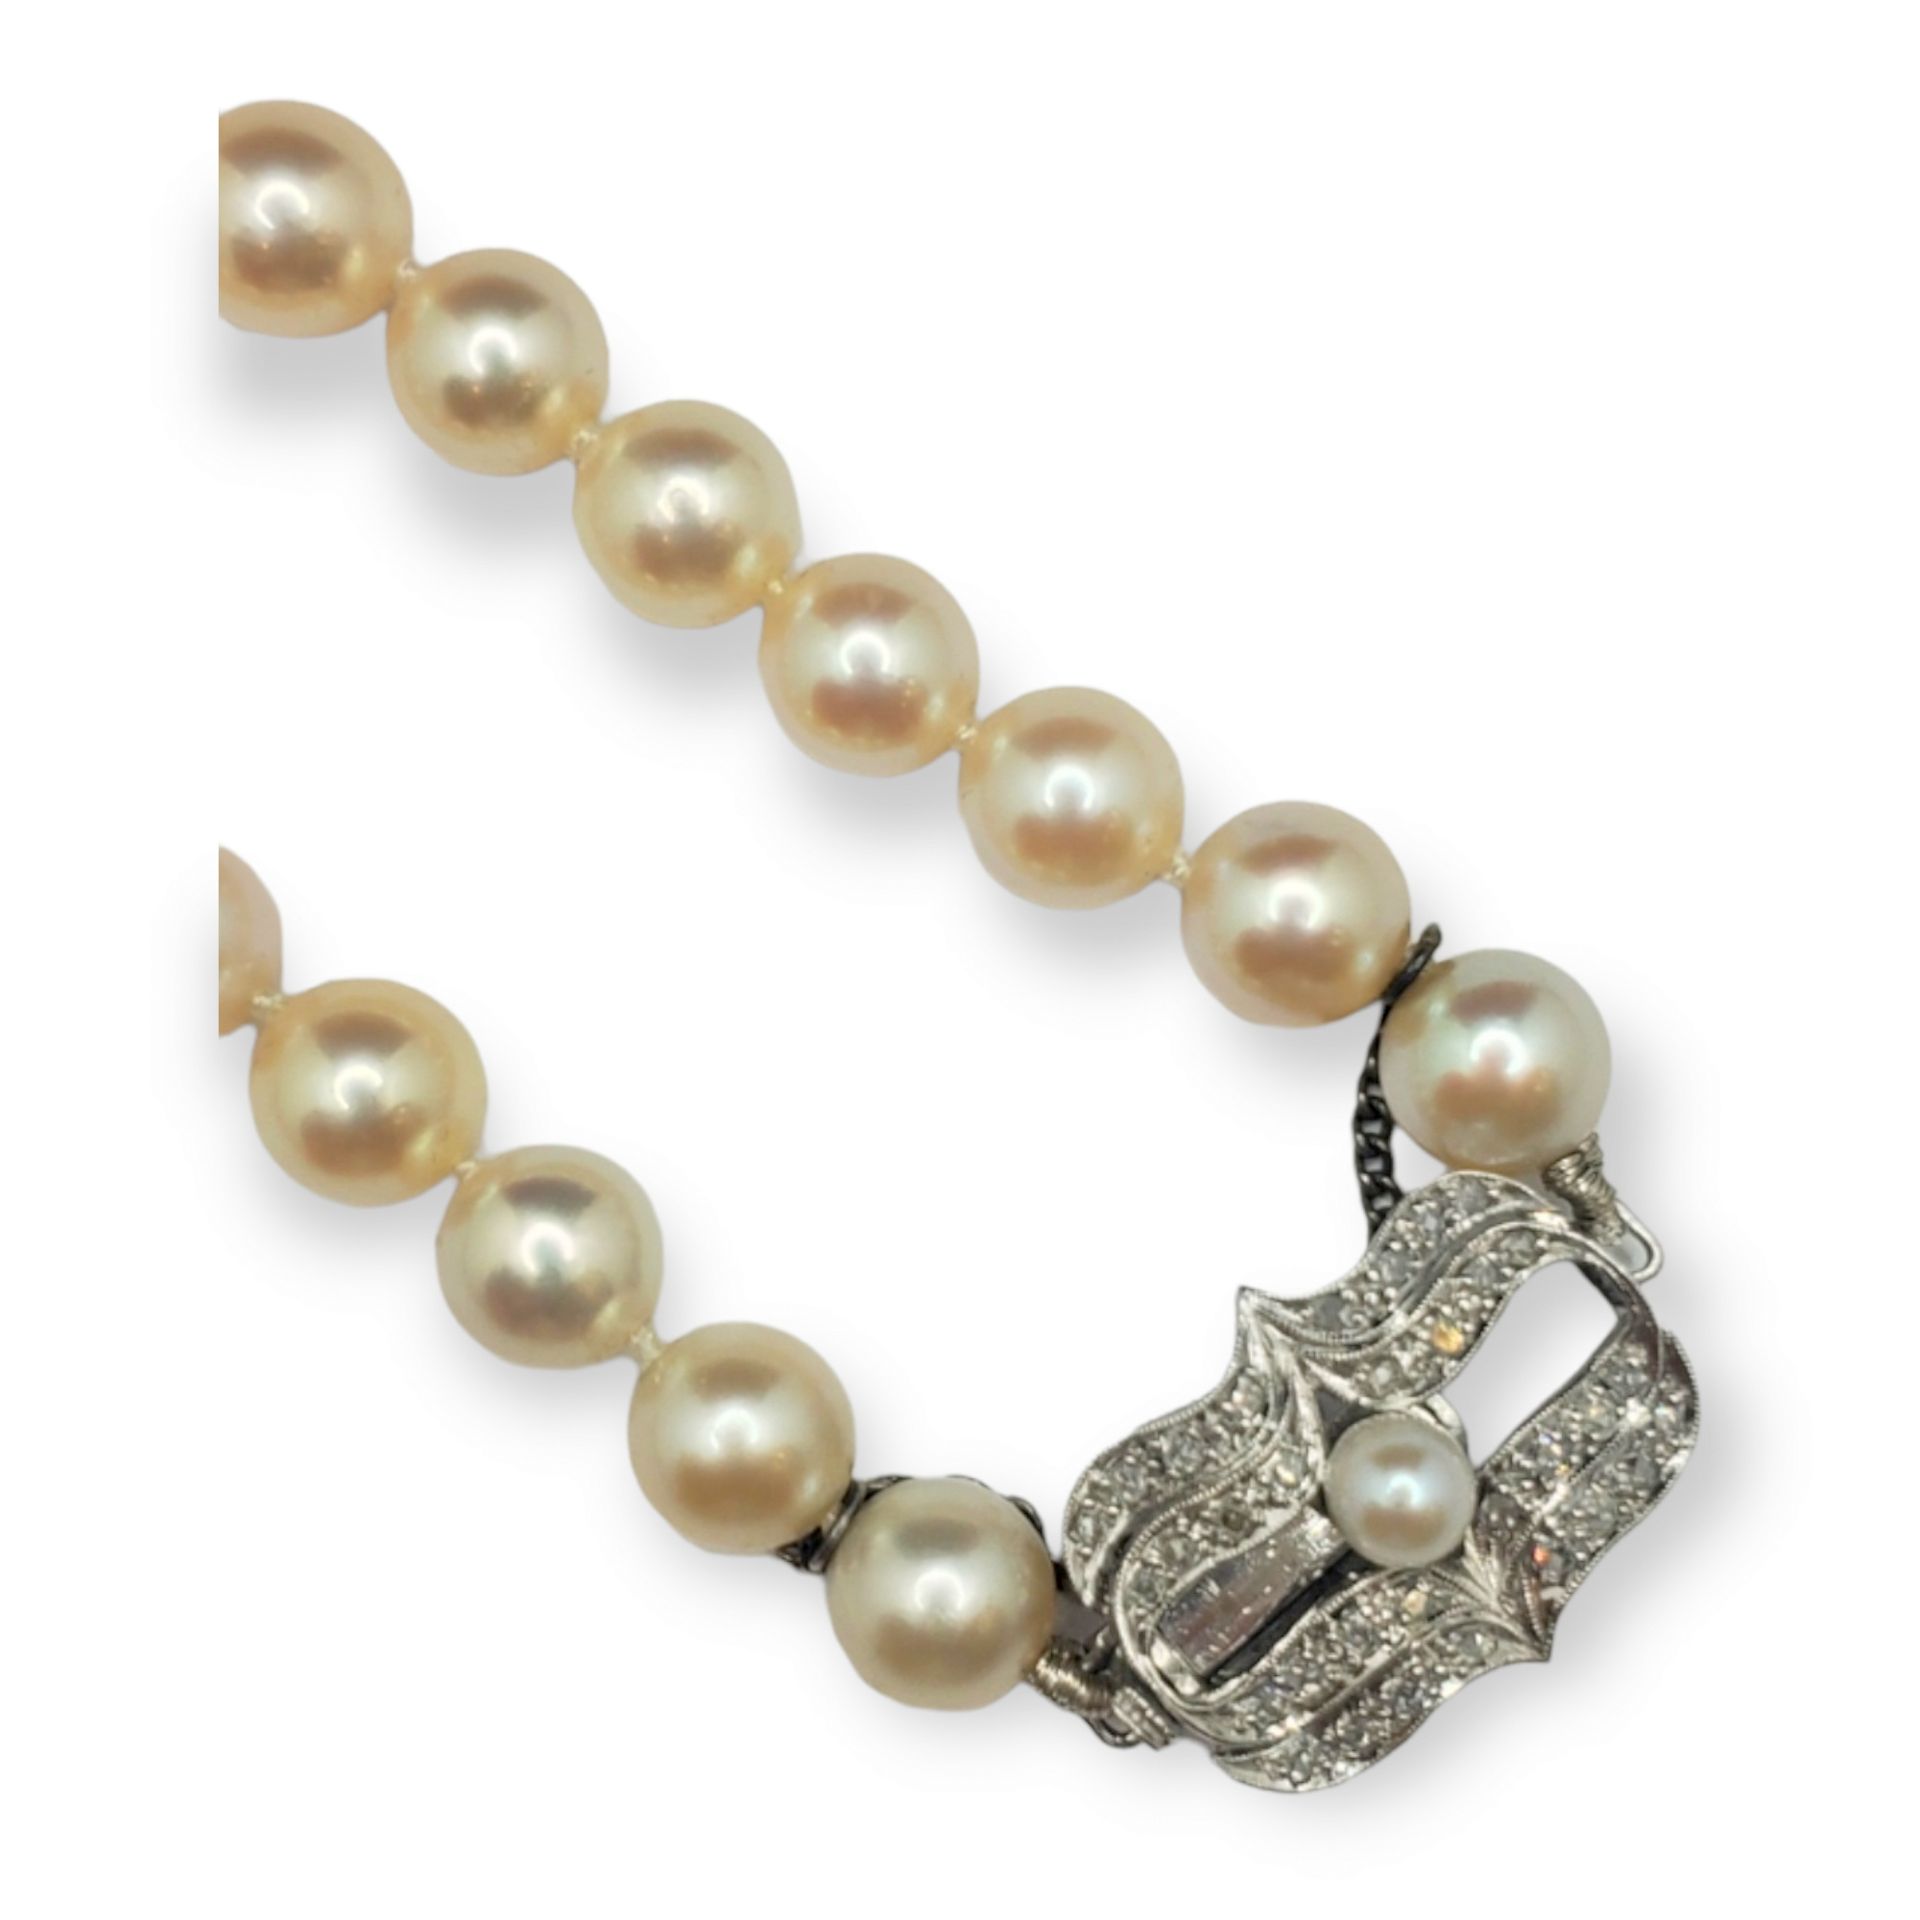 Collar de perlas cultivadas con cierre de diamantes 18K白金和钻石的养殖珍珠领，中央为珍珠。 

尺寸46&hellip;